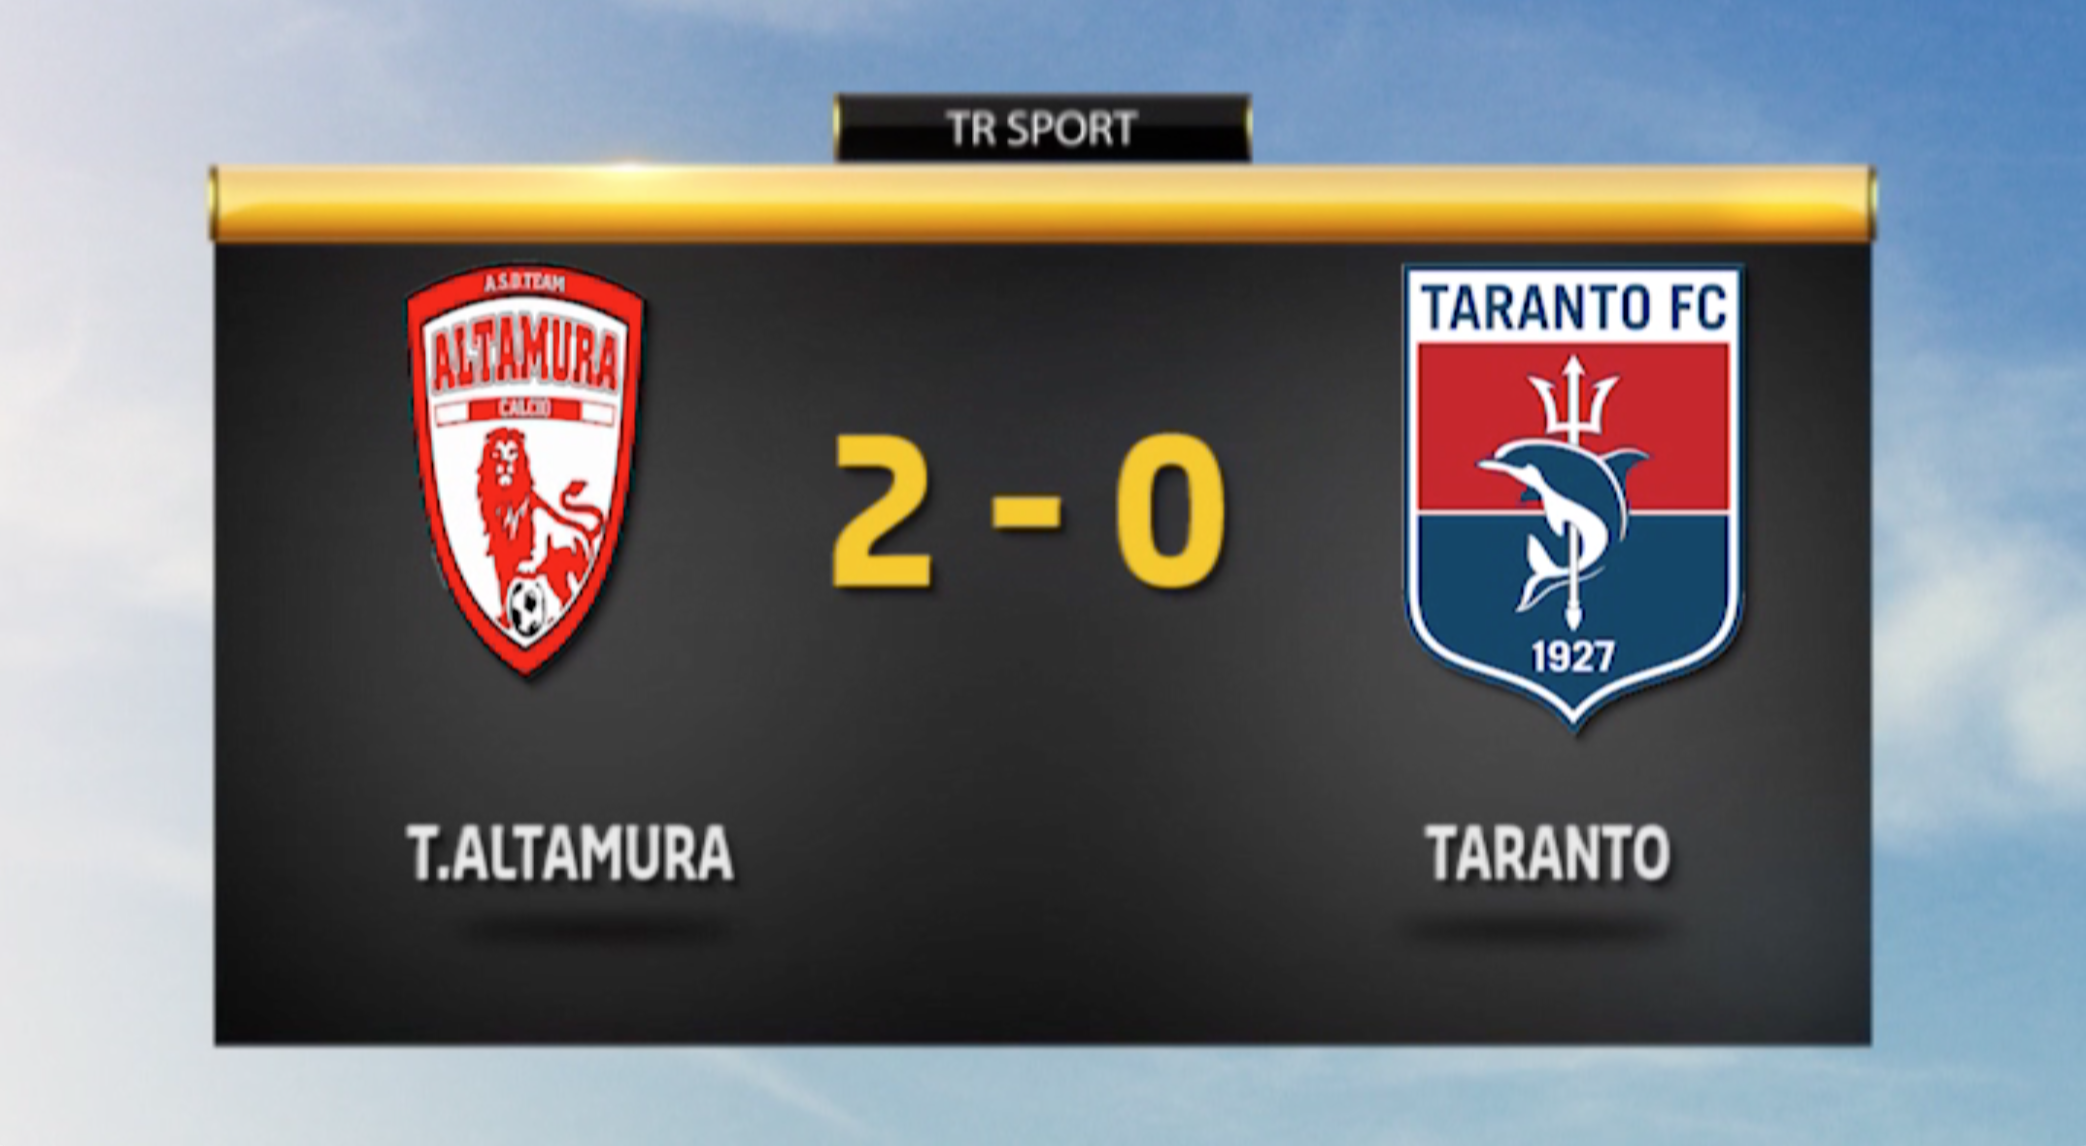 T. Altamura - Taranto 2-0